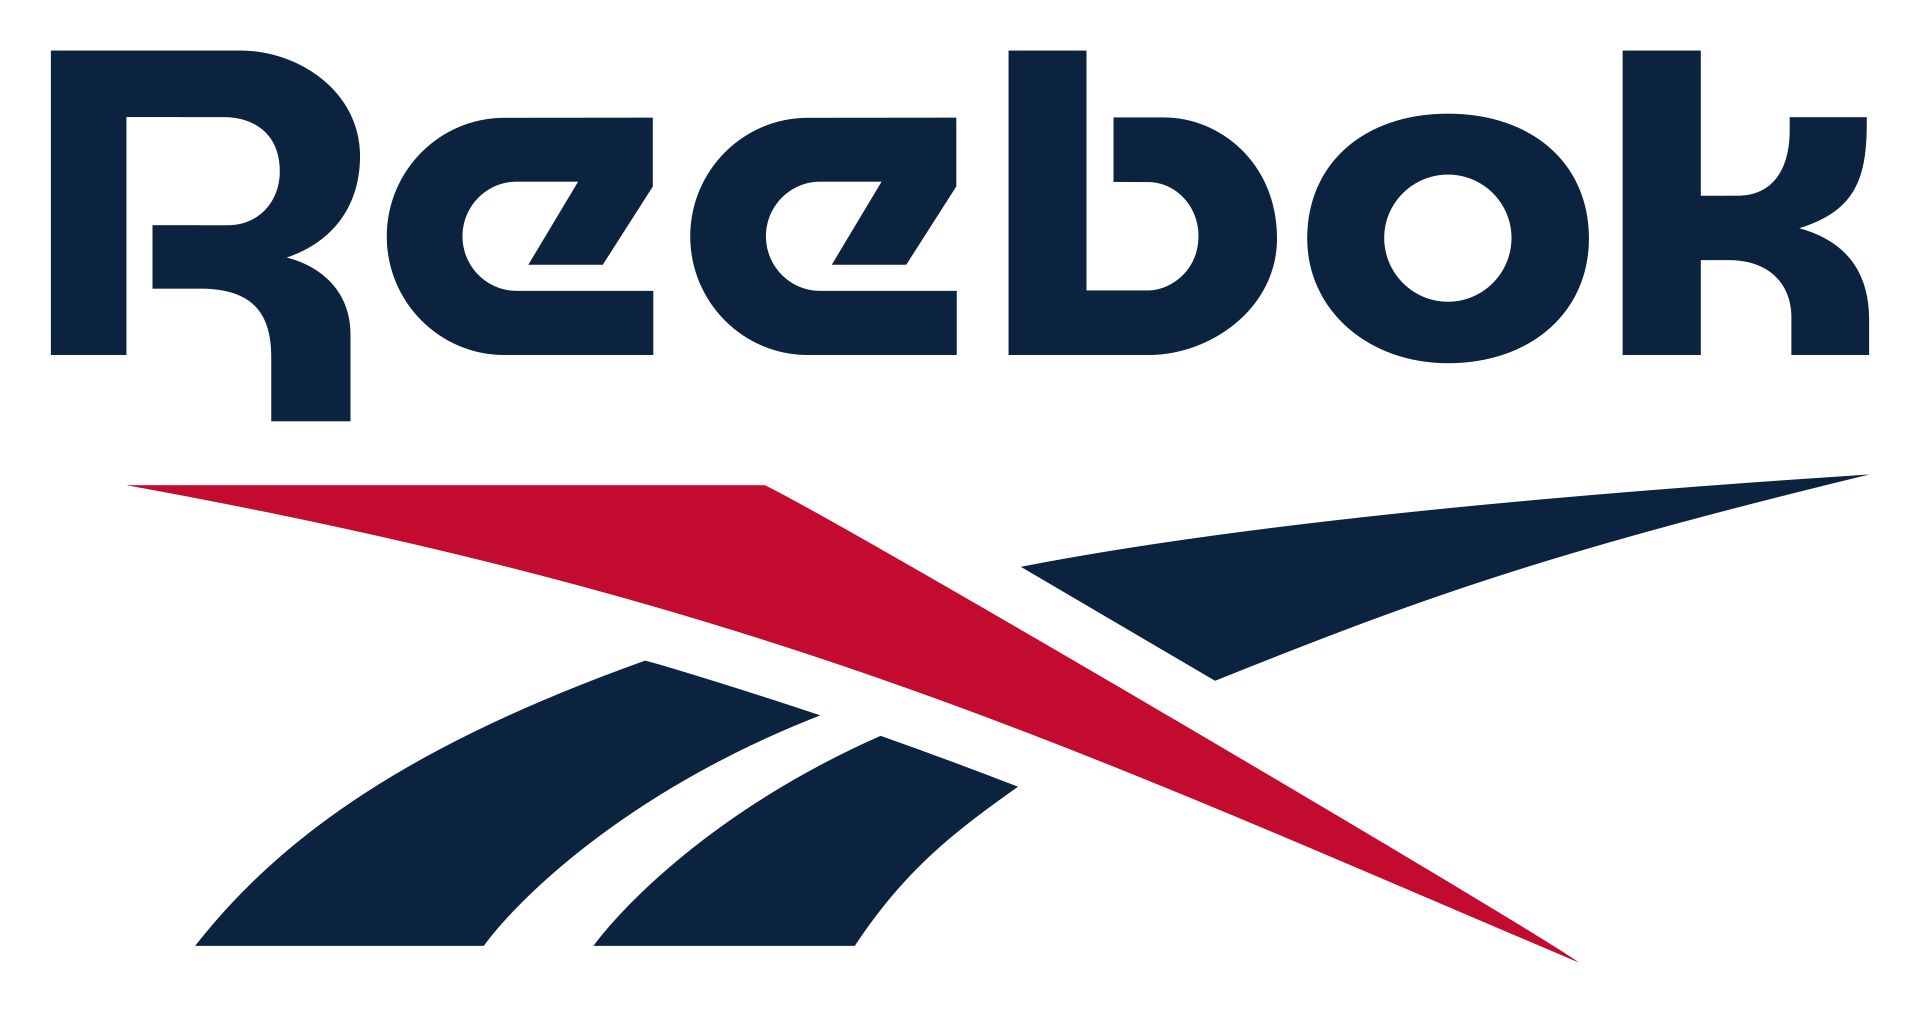 Reebok Brand Logo